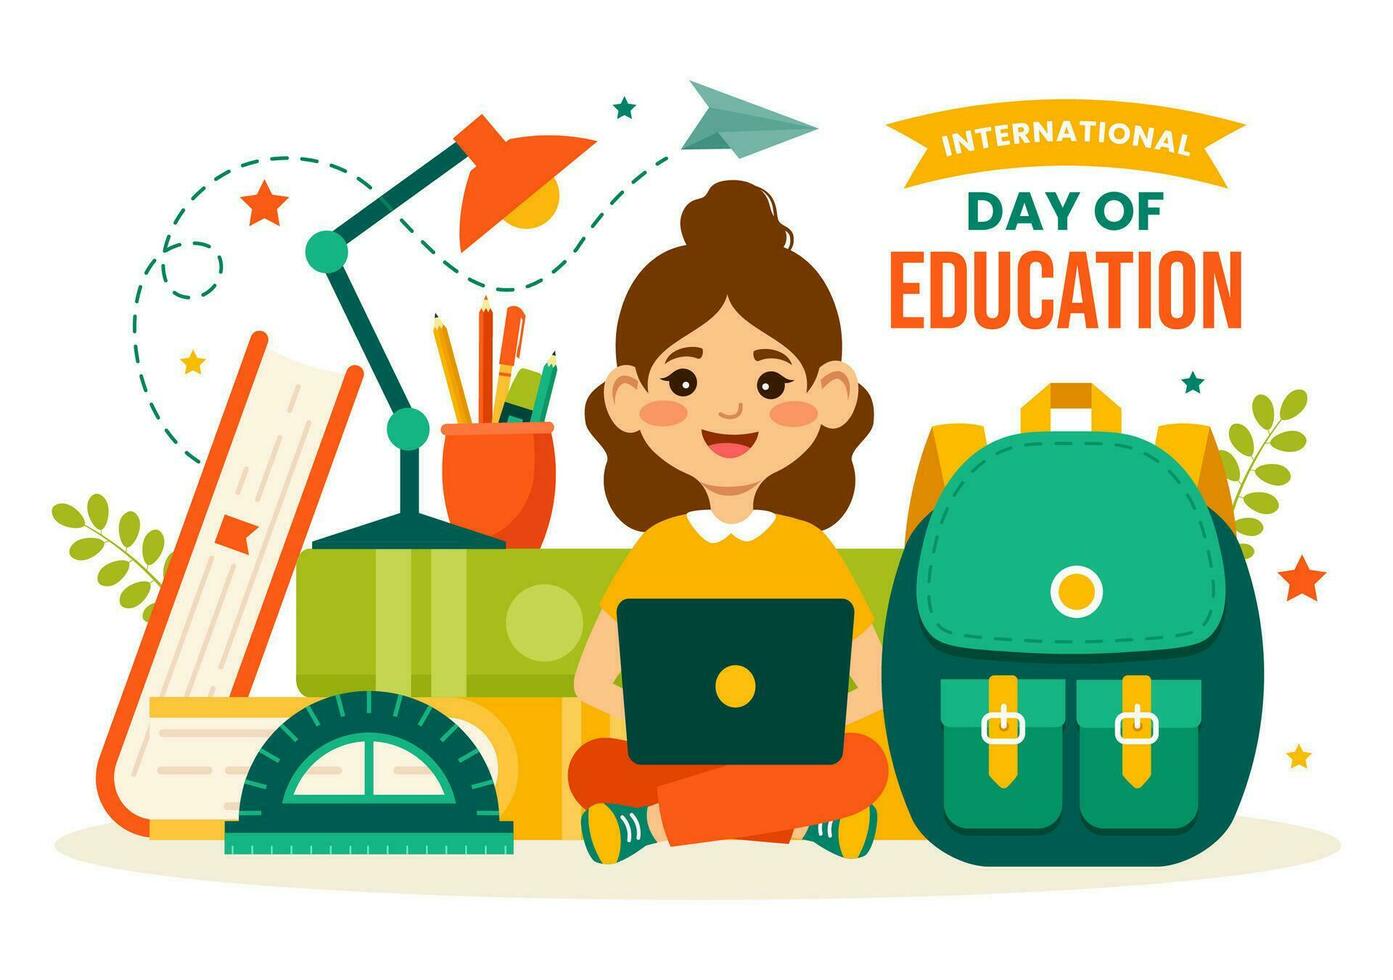 International Bildung Tag Vektor Illustration auf 24 Januar mit Student, Erde Globus und Studie Element im Wissen eben Karikatur Hintergrund Design